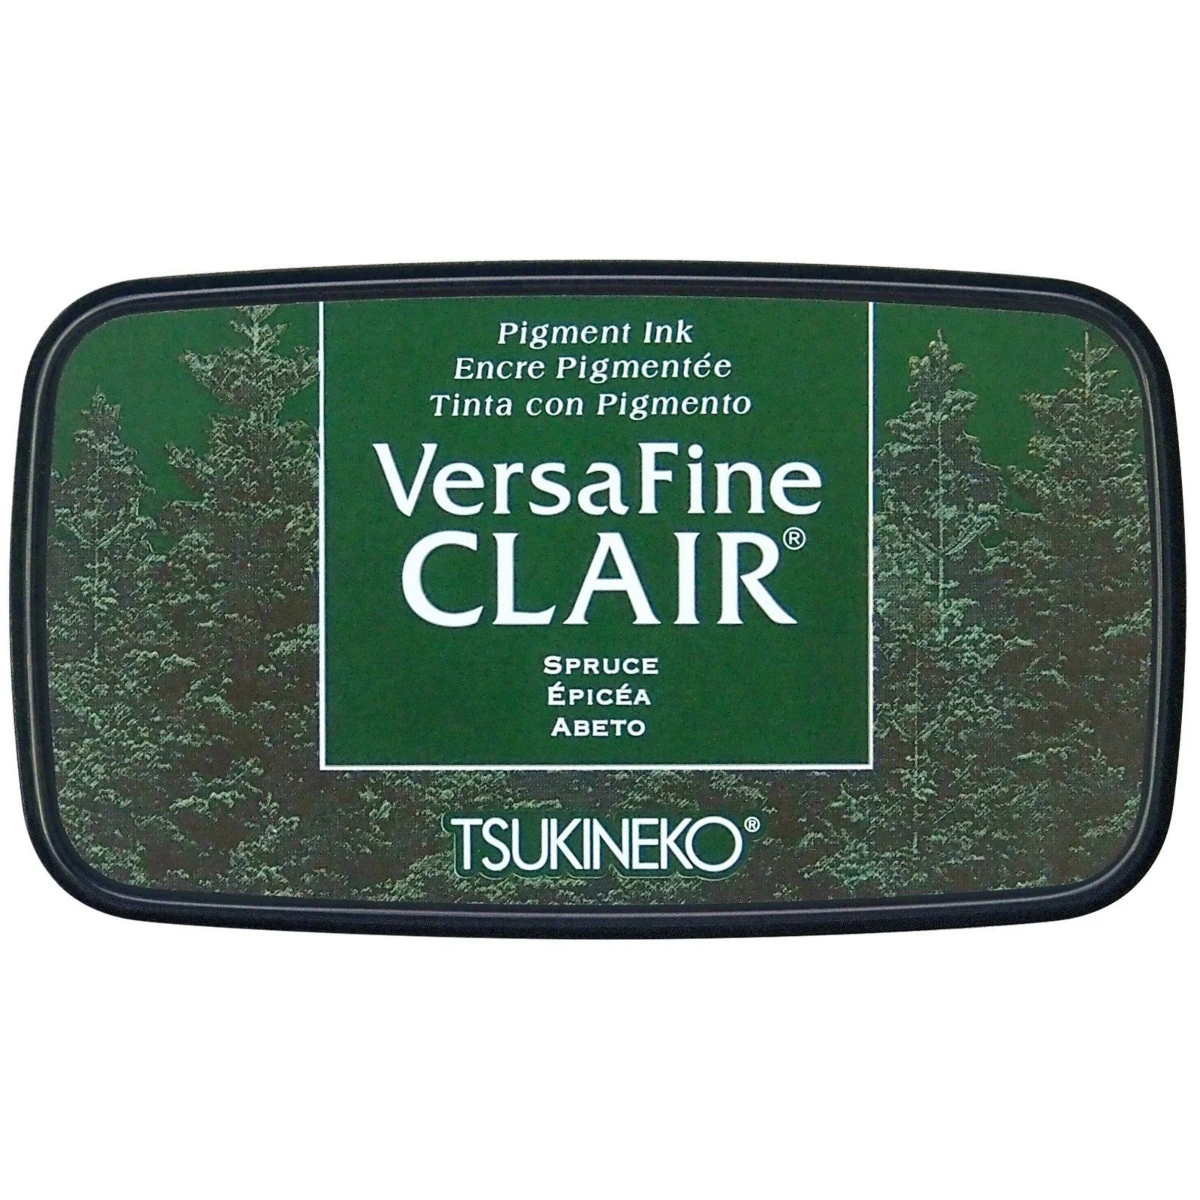 VersaFine Clair – Spruce